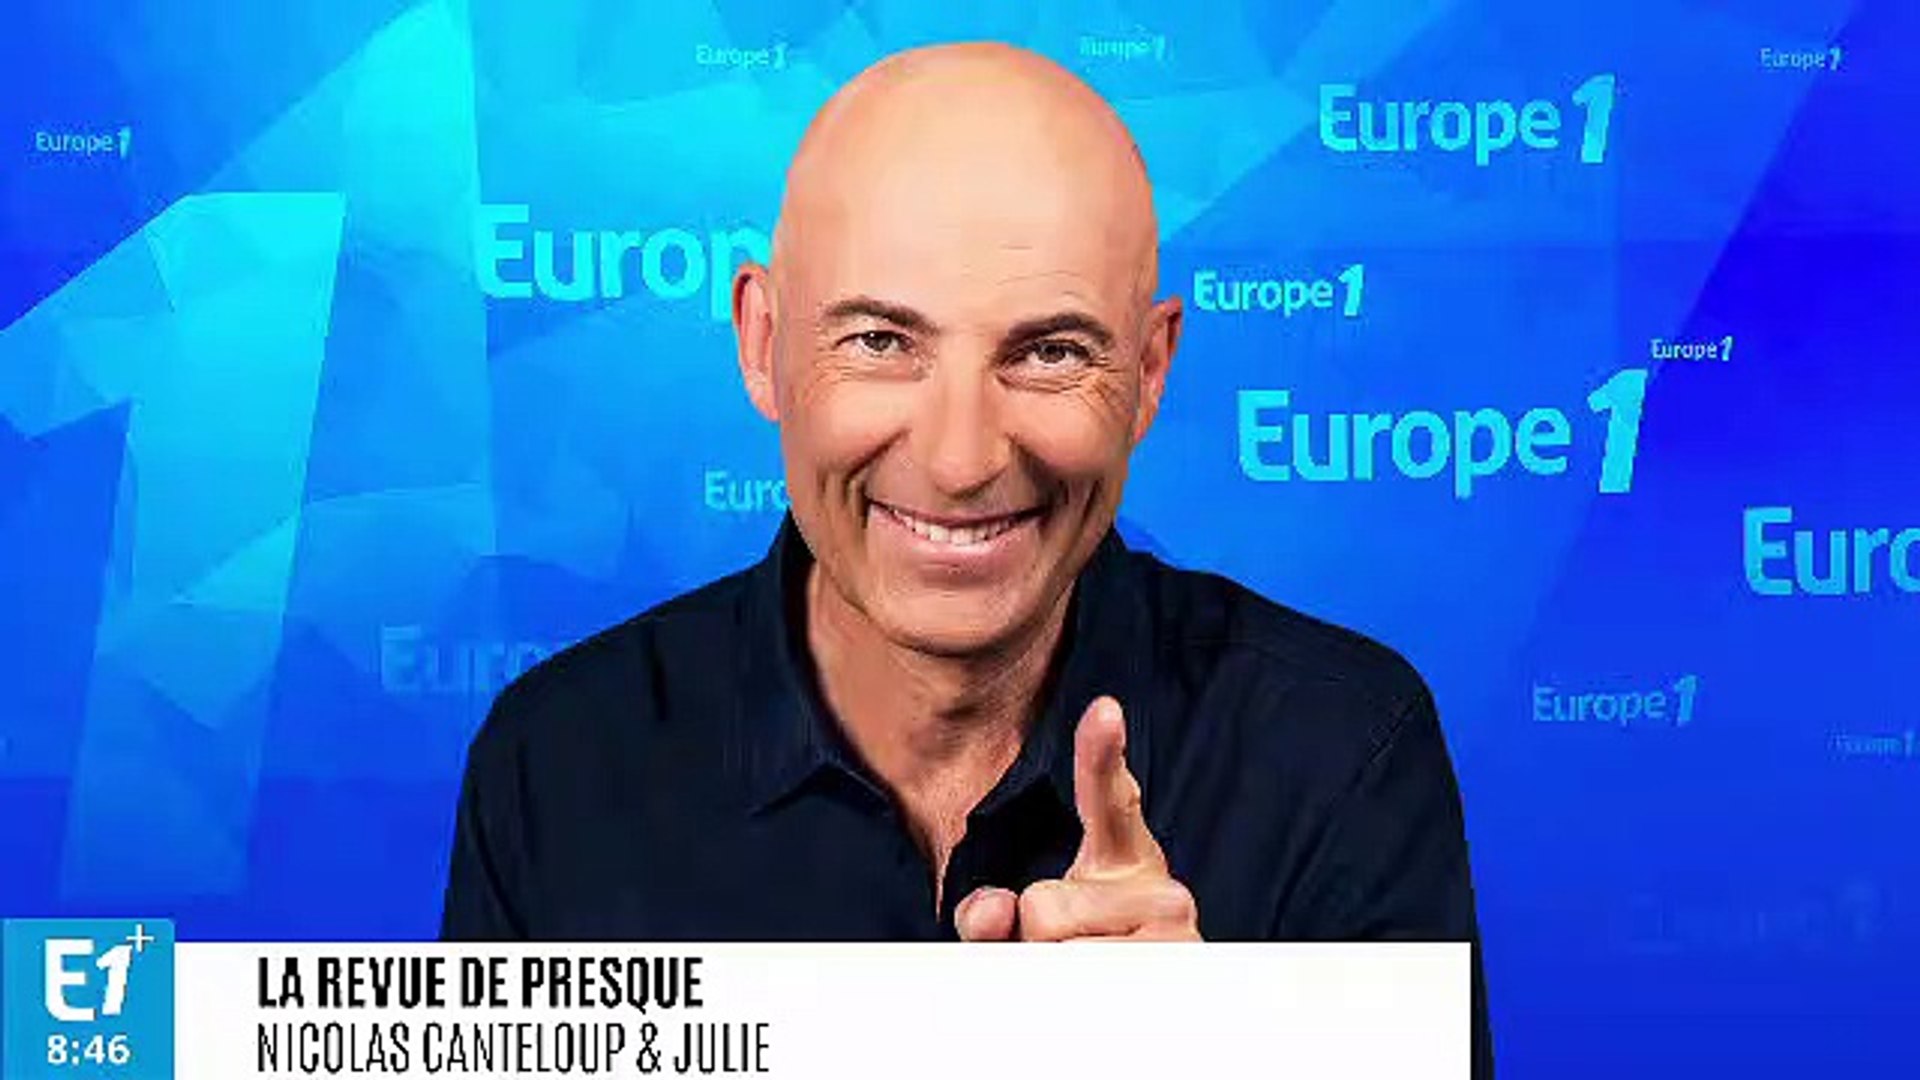 BEST-OF - Gérard Collomb : "Depuis que j'ai quitté Emmanuel, je suis un  cœur à prendre" (Canteloup) - Vidéo Dailymotion